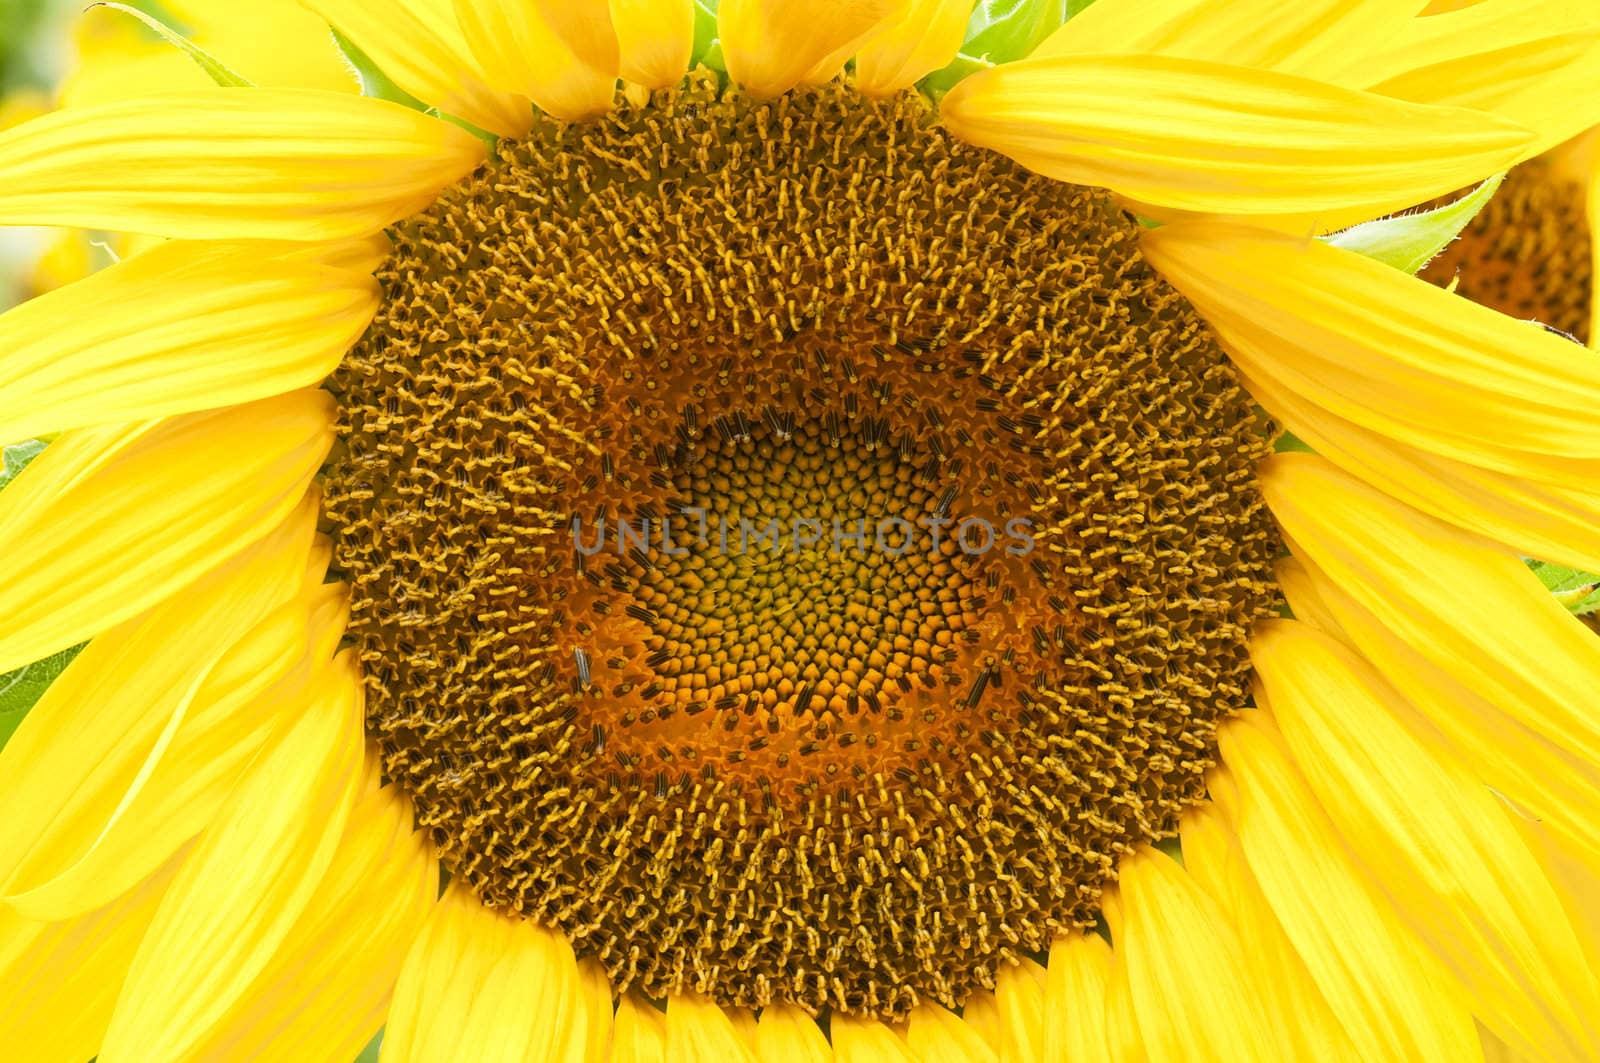 Sunflower in full bloom in summer